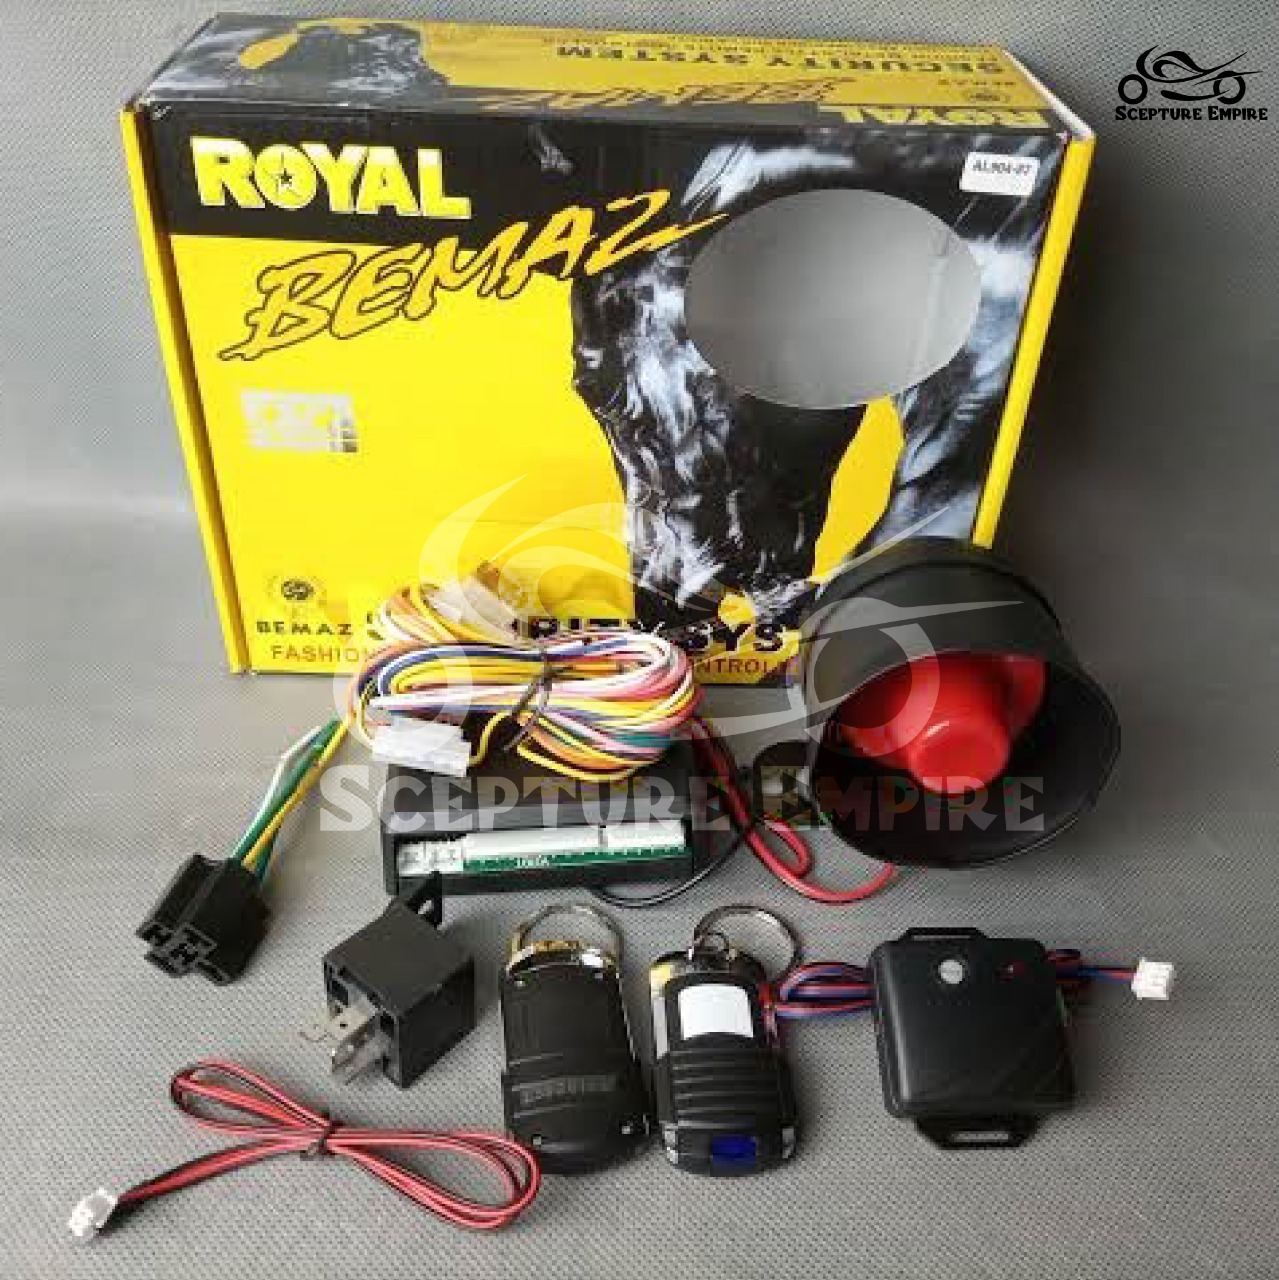 Royal Bemaz car alarm system